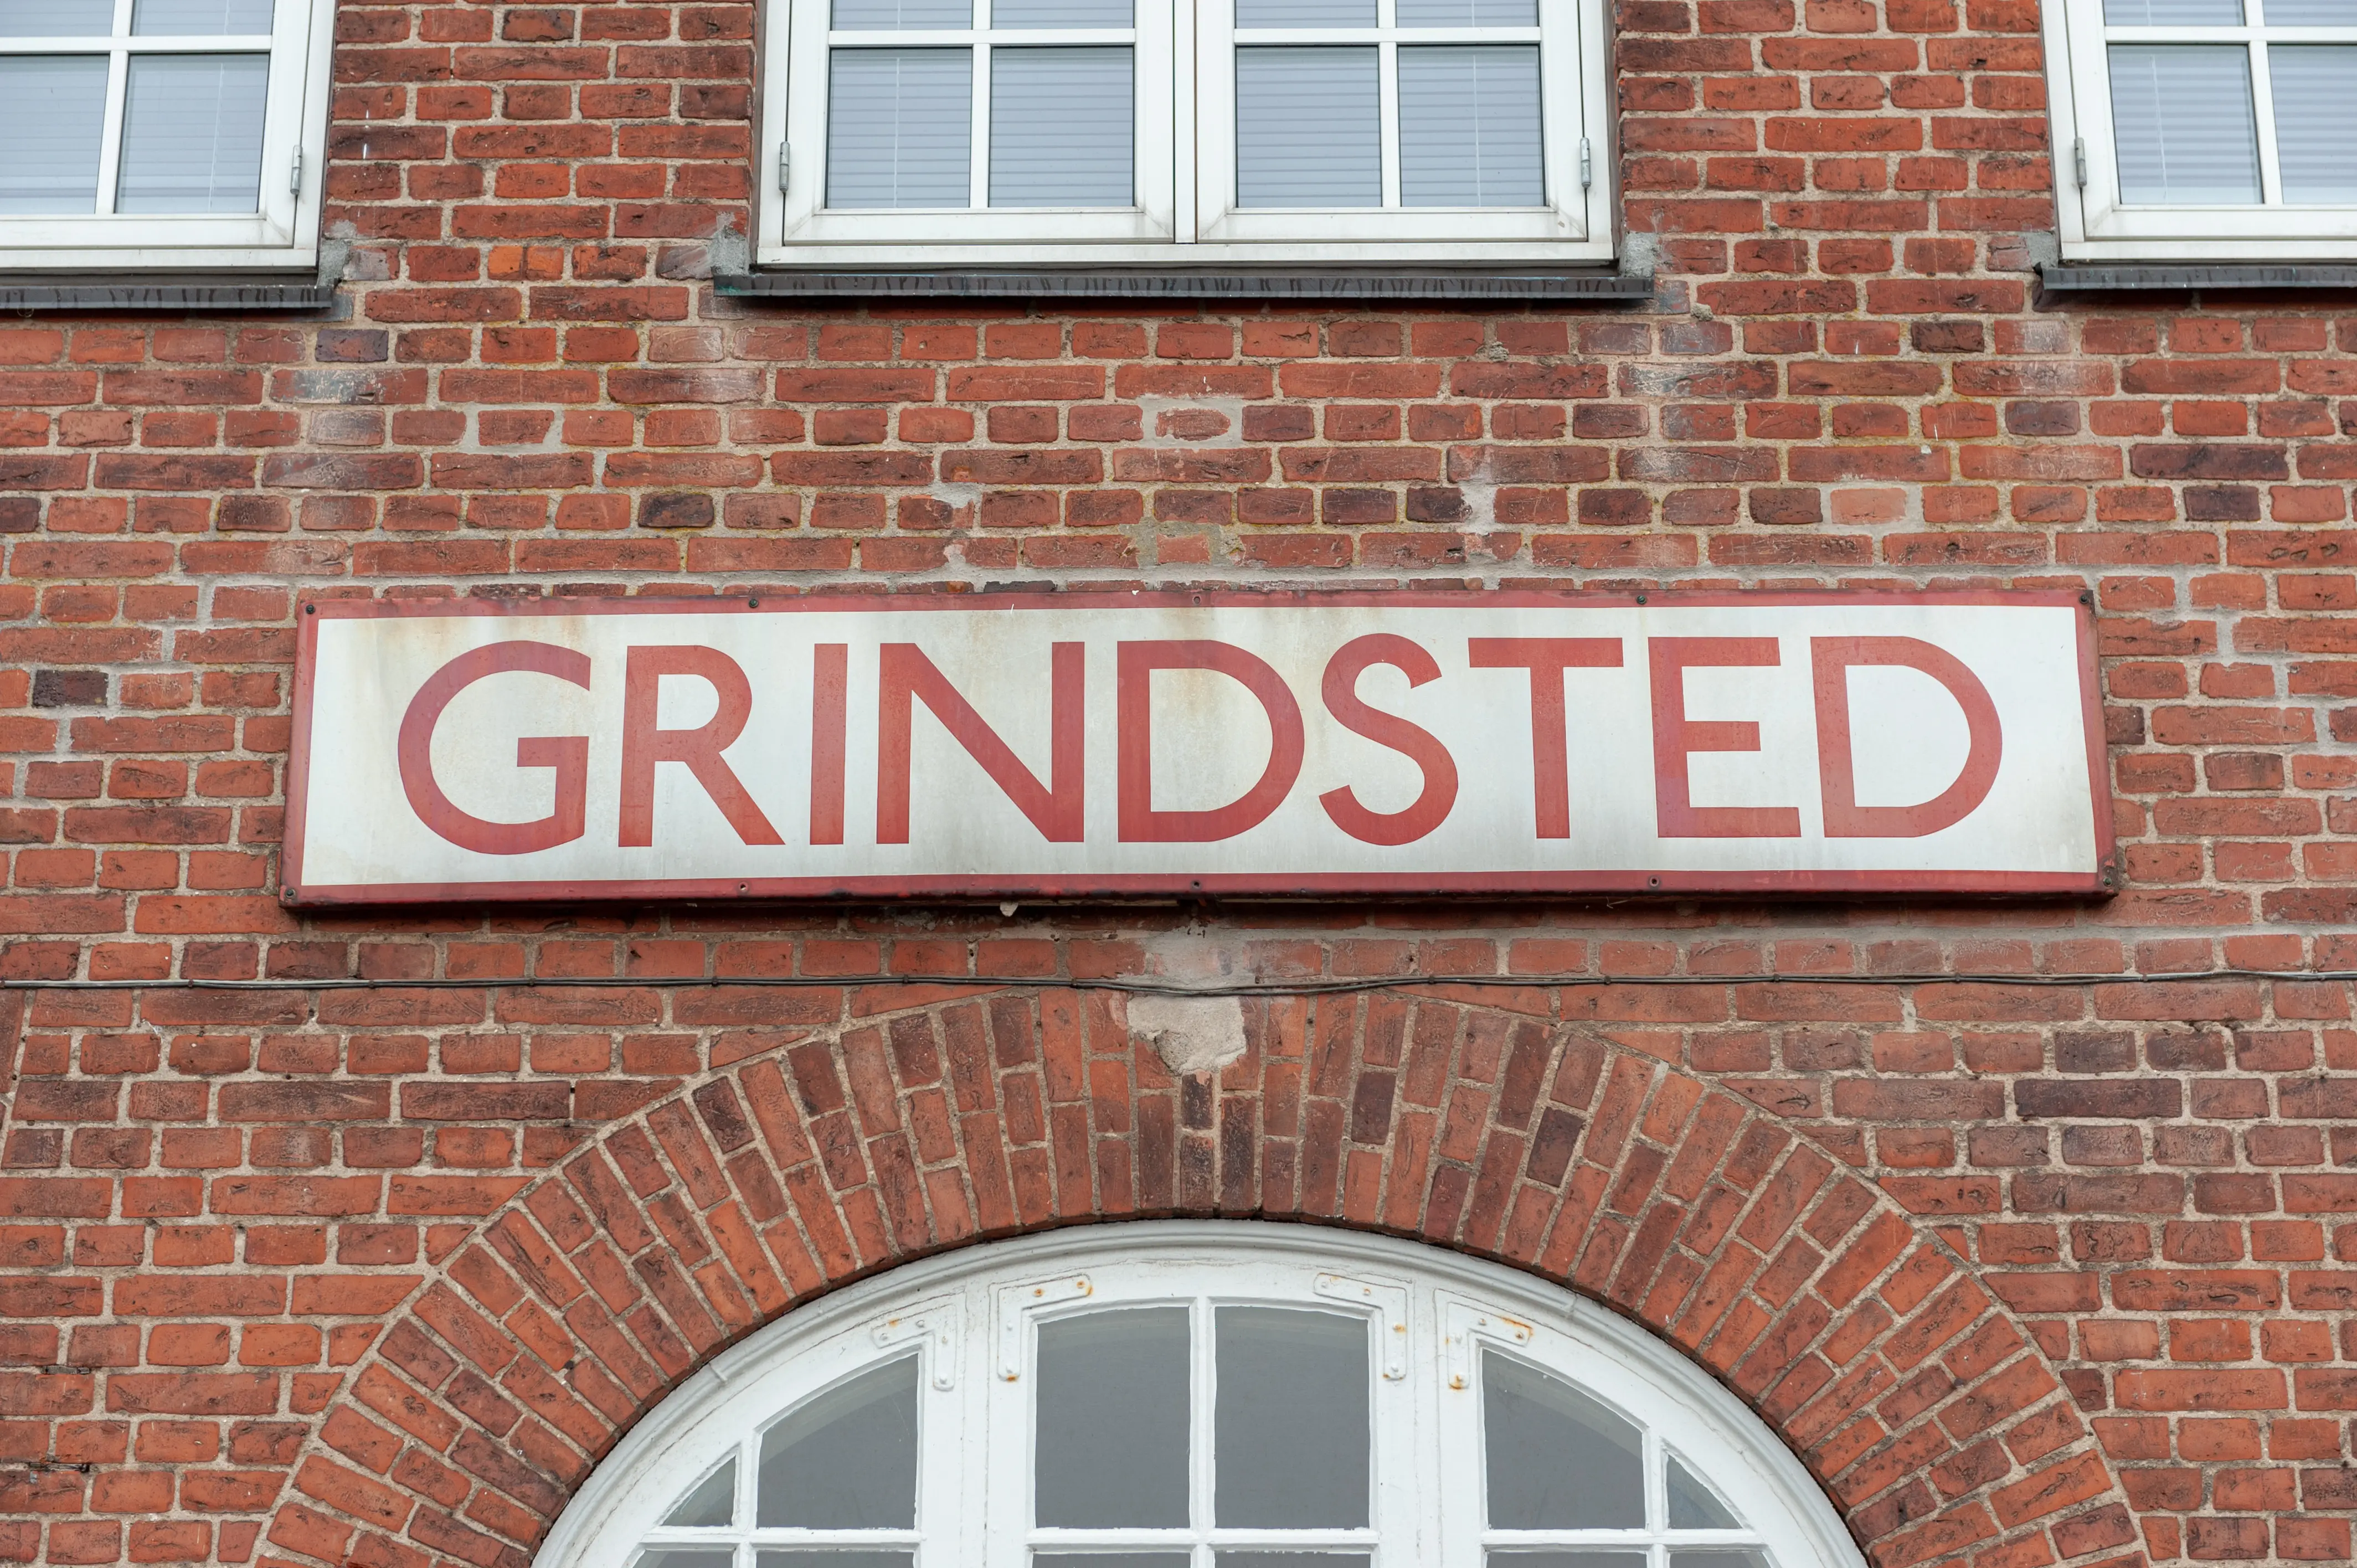 Grindsted Station.